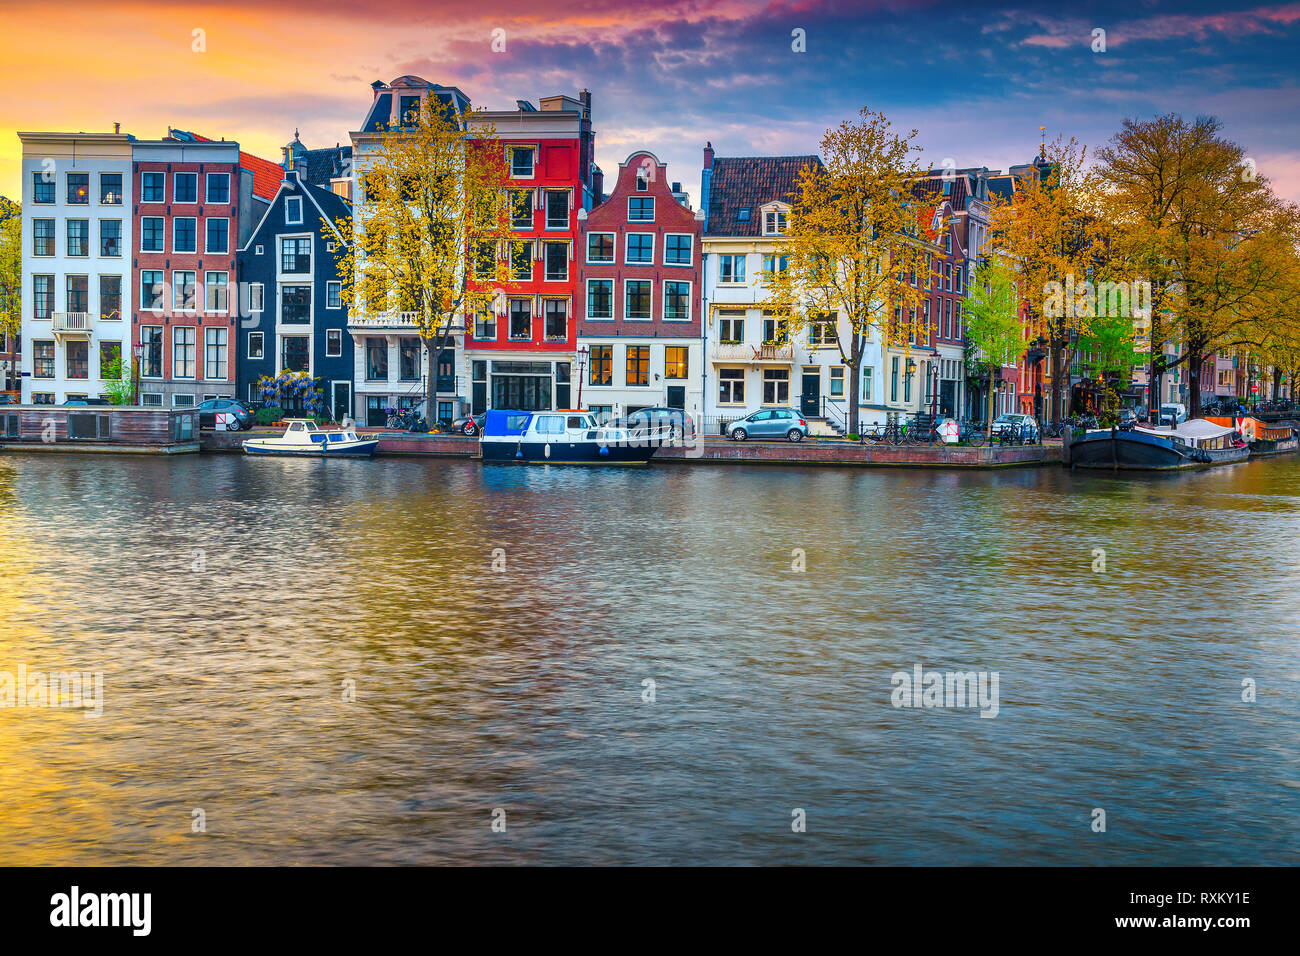 Situation touristique et de voyage spectaculaire, une ville avec des maisons traditionnelles néerlandaises. Canal de l'eau avec péniches au coucher du soleil, Amsterdam, Nethe Banque D'Images